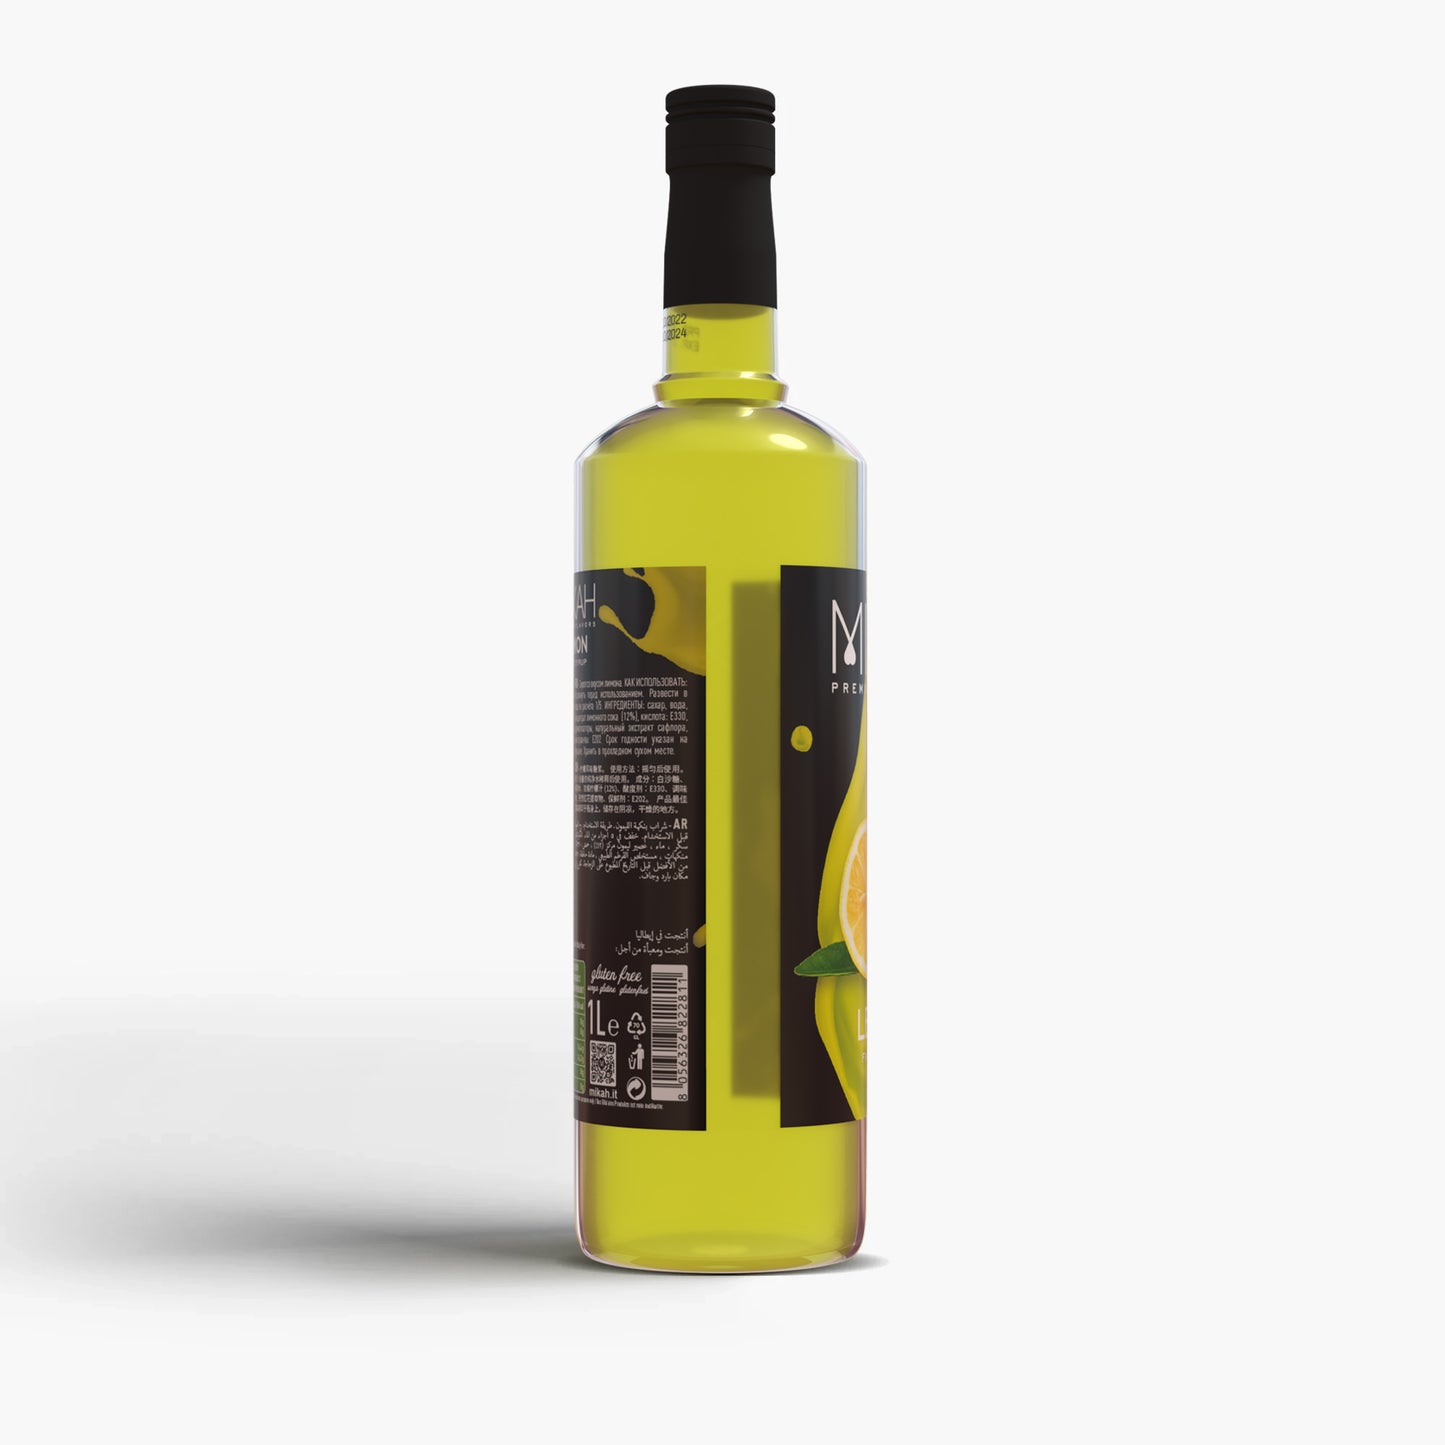 
                  
                    Syrup Mikah Premium Flavors - Lemon 1L
                  
                